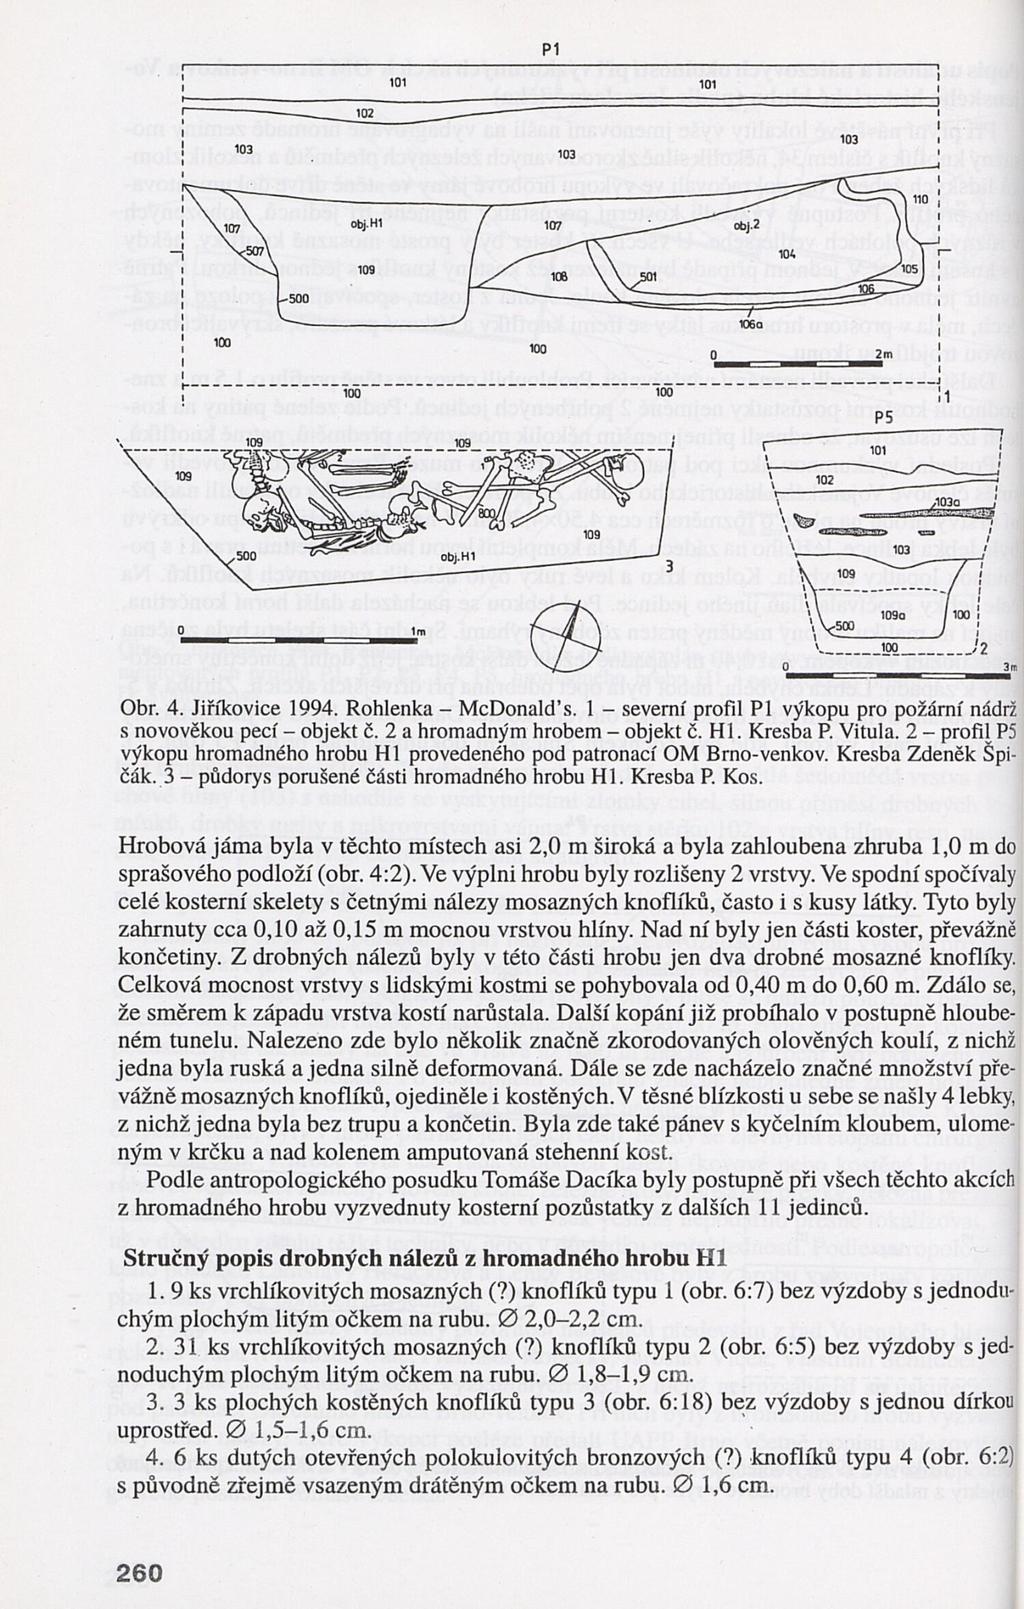 PI Obr. 4. Jiříkovice 1994. Rohlenka - McDonald s. 1 - severní profil PÍ výkopu pro po s novověkou pecí - objekt č. 2 a hromadným hrobem - objekt č. H1. Kresba P. Vitula.